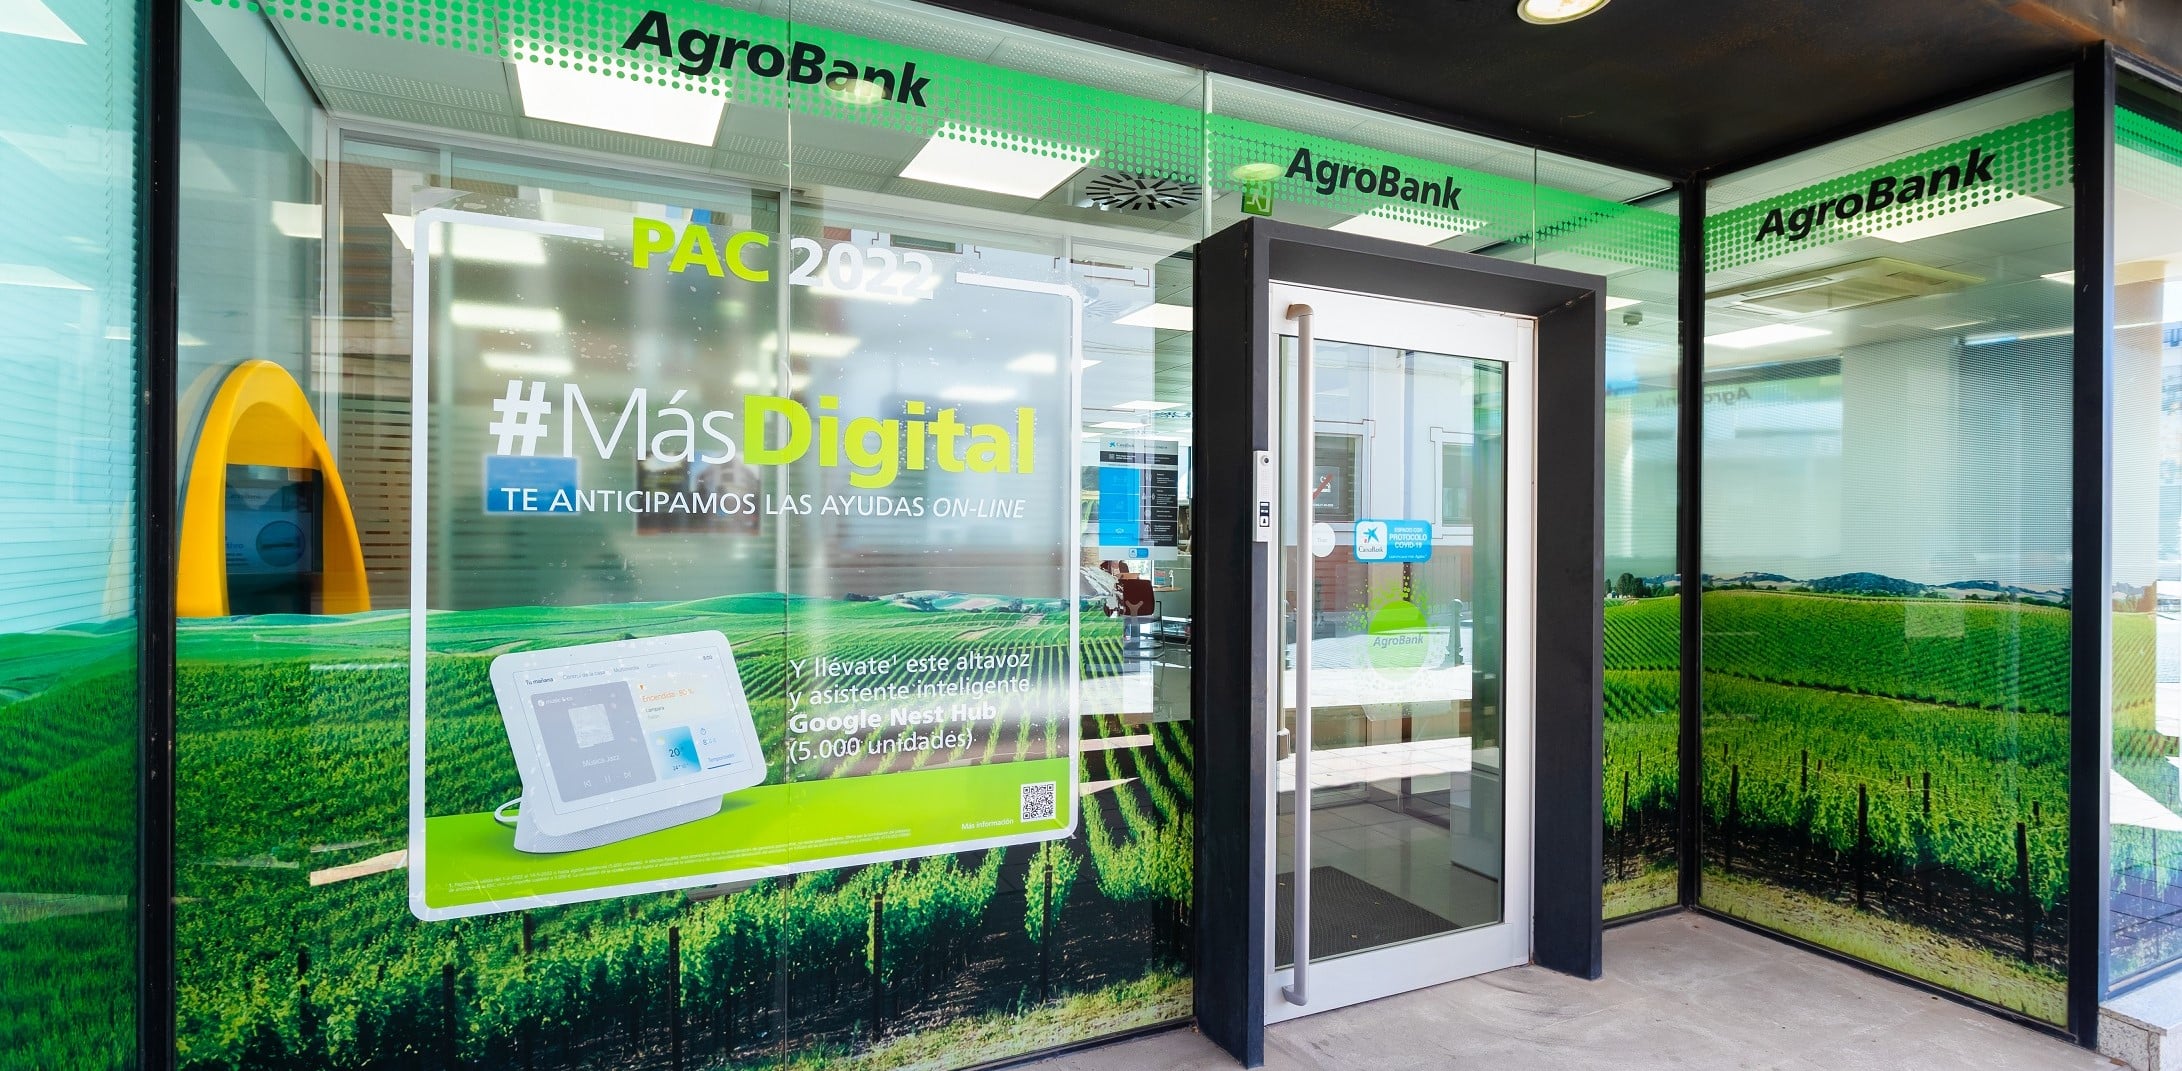 AgroBank, de Caixabank, financia al sector agroalimentario con 14.415 millones, un 85% más